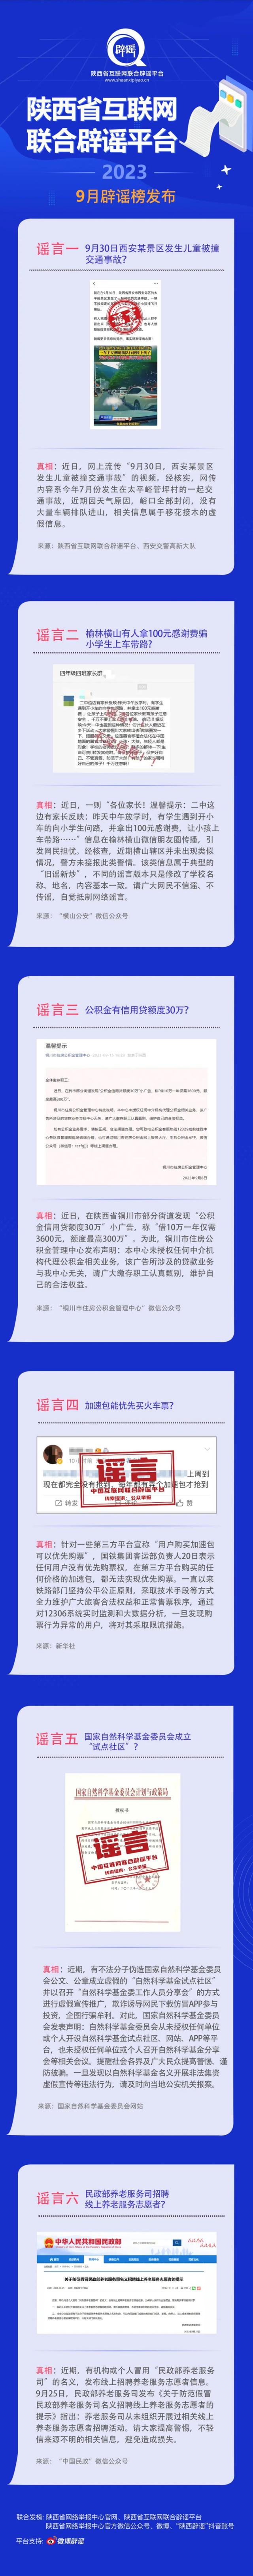 陕西省互联网联合辟谣平台9月辟谣榜发布